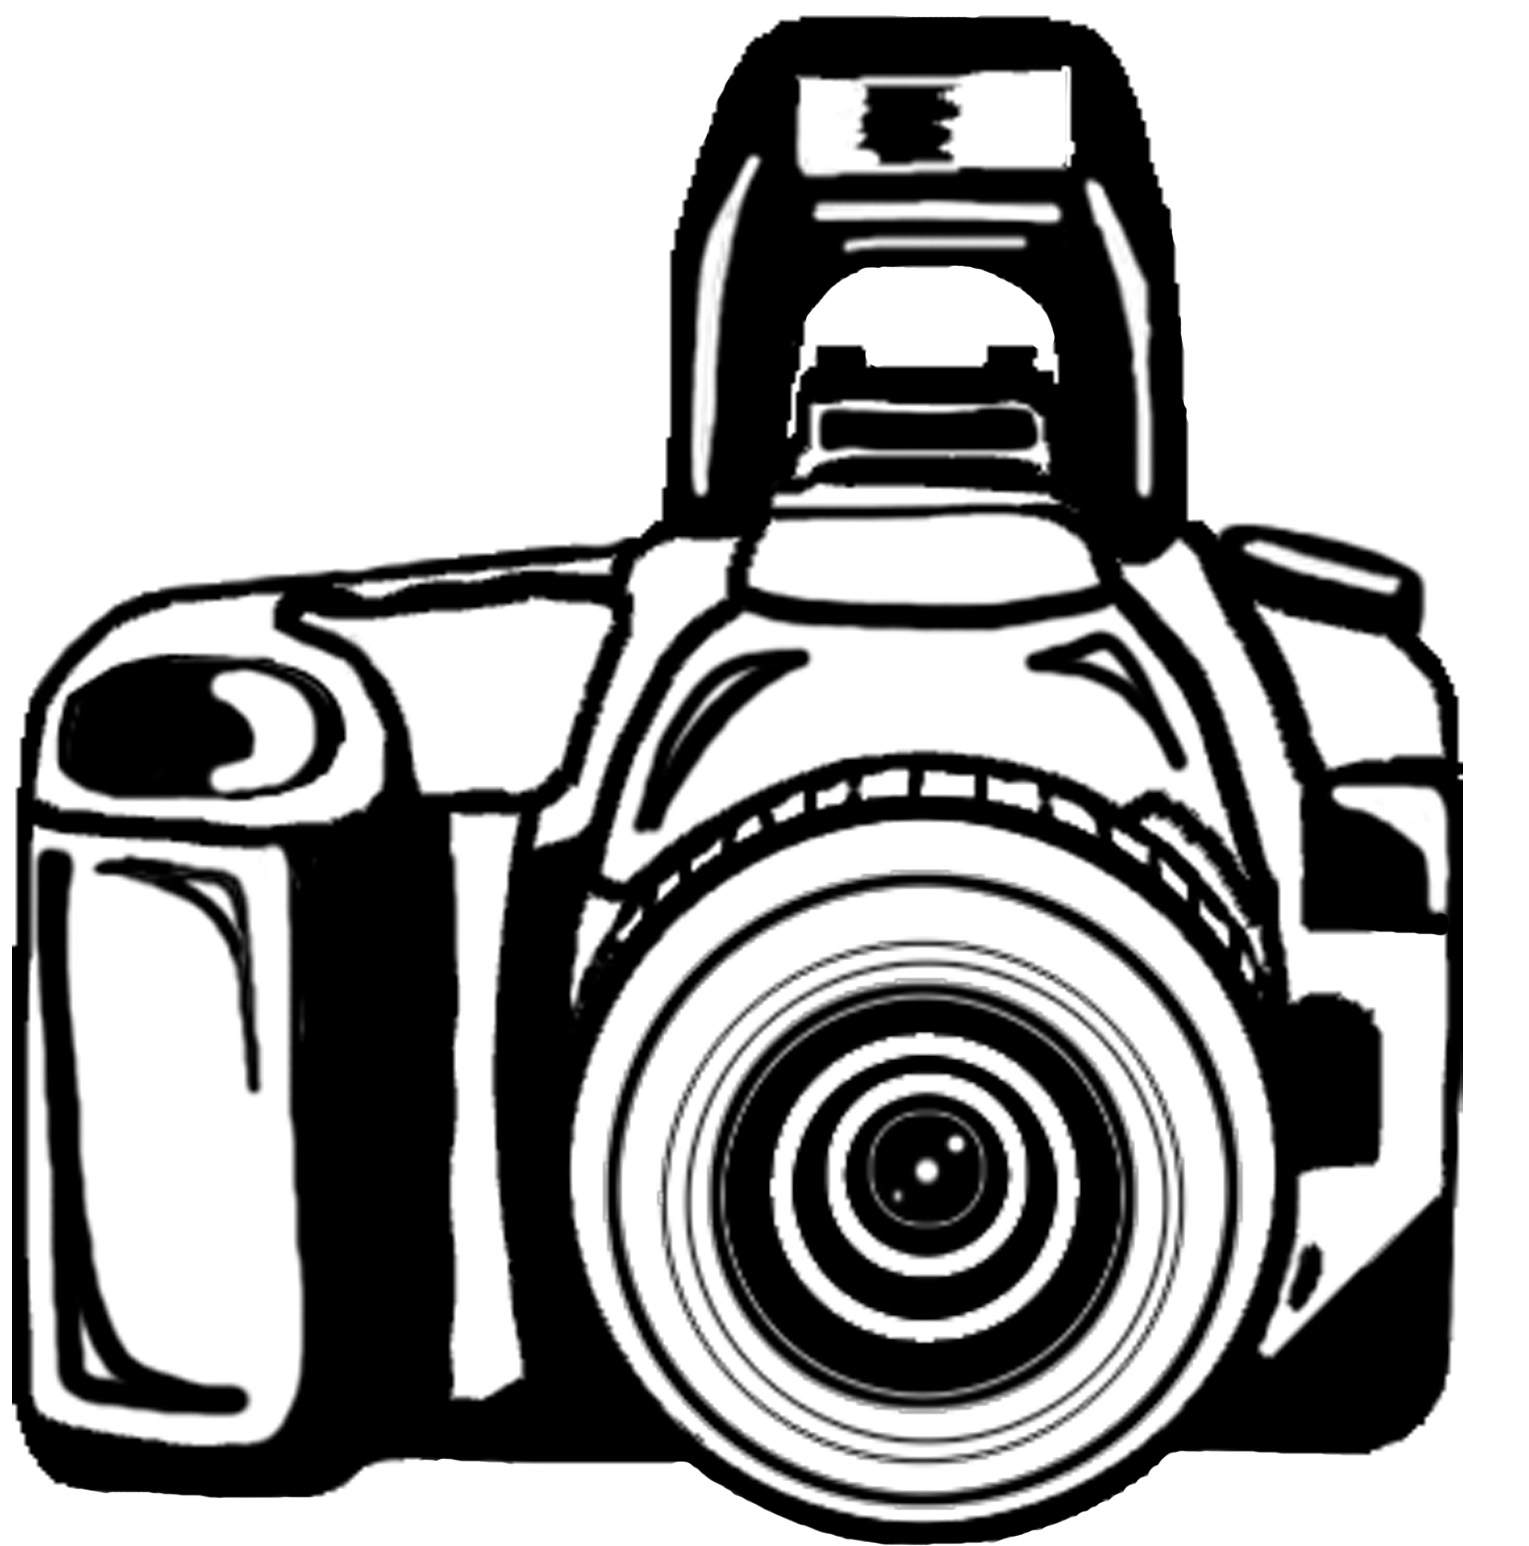 Nikon clipart #7, Download drawings